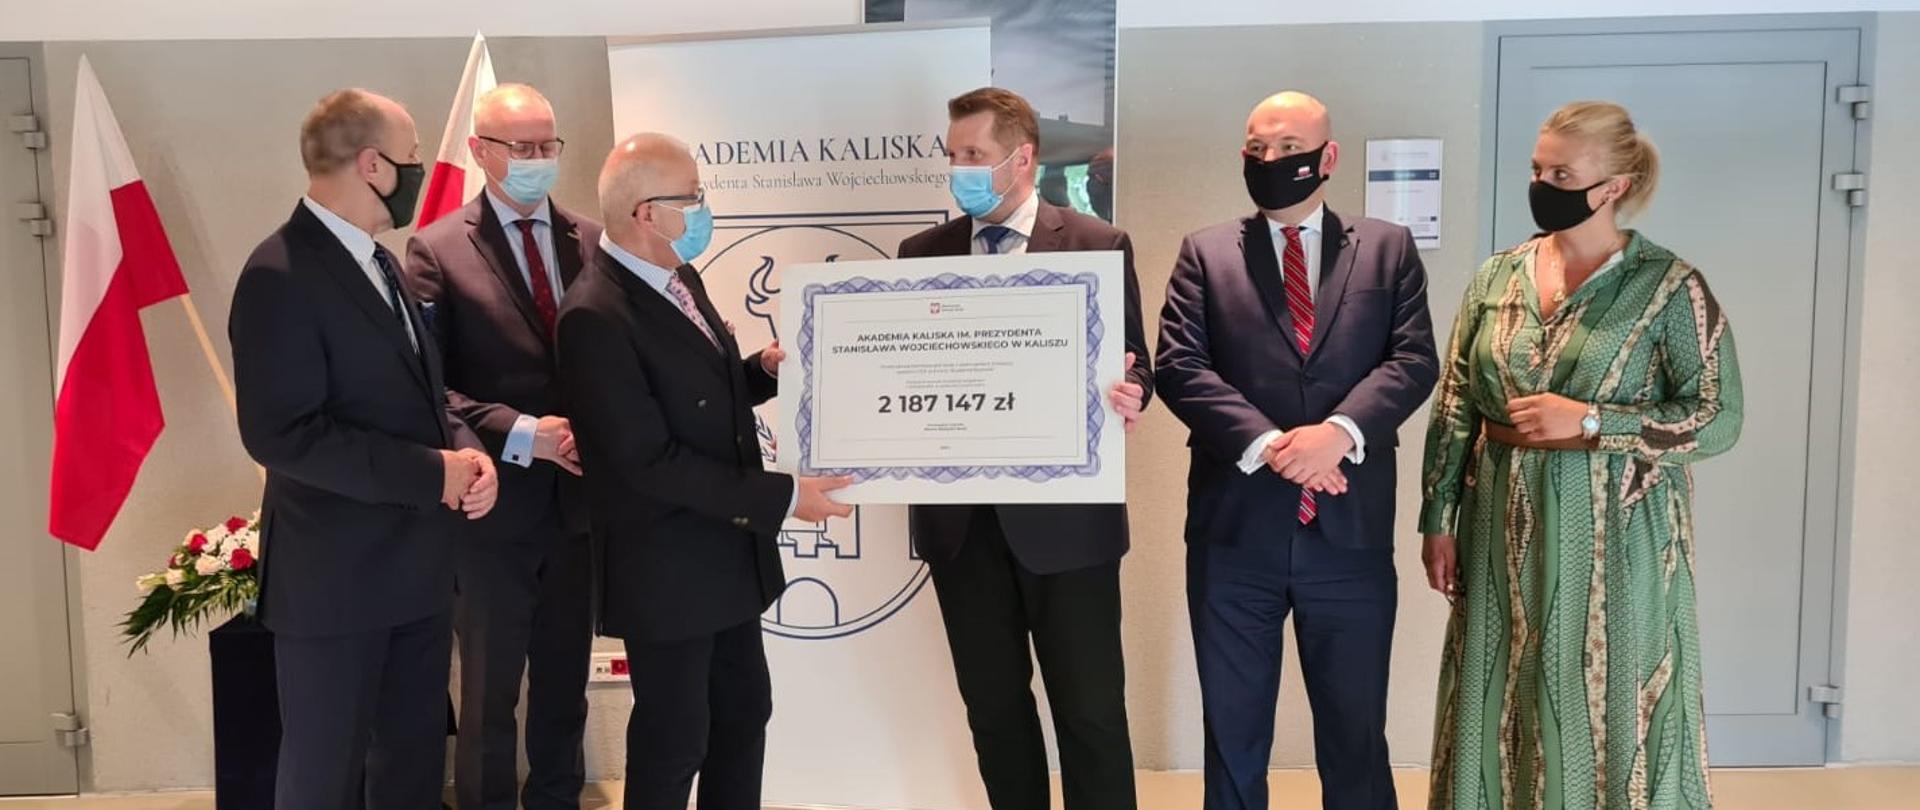 Minister Czarnek stoi w otoczeniu członków kolegium Akademii Kaliskiej, trzymając symboliczny czek - dużą kartkę z napisem 2 187 147 zł.